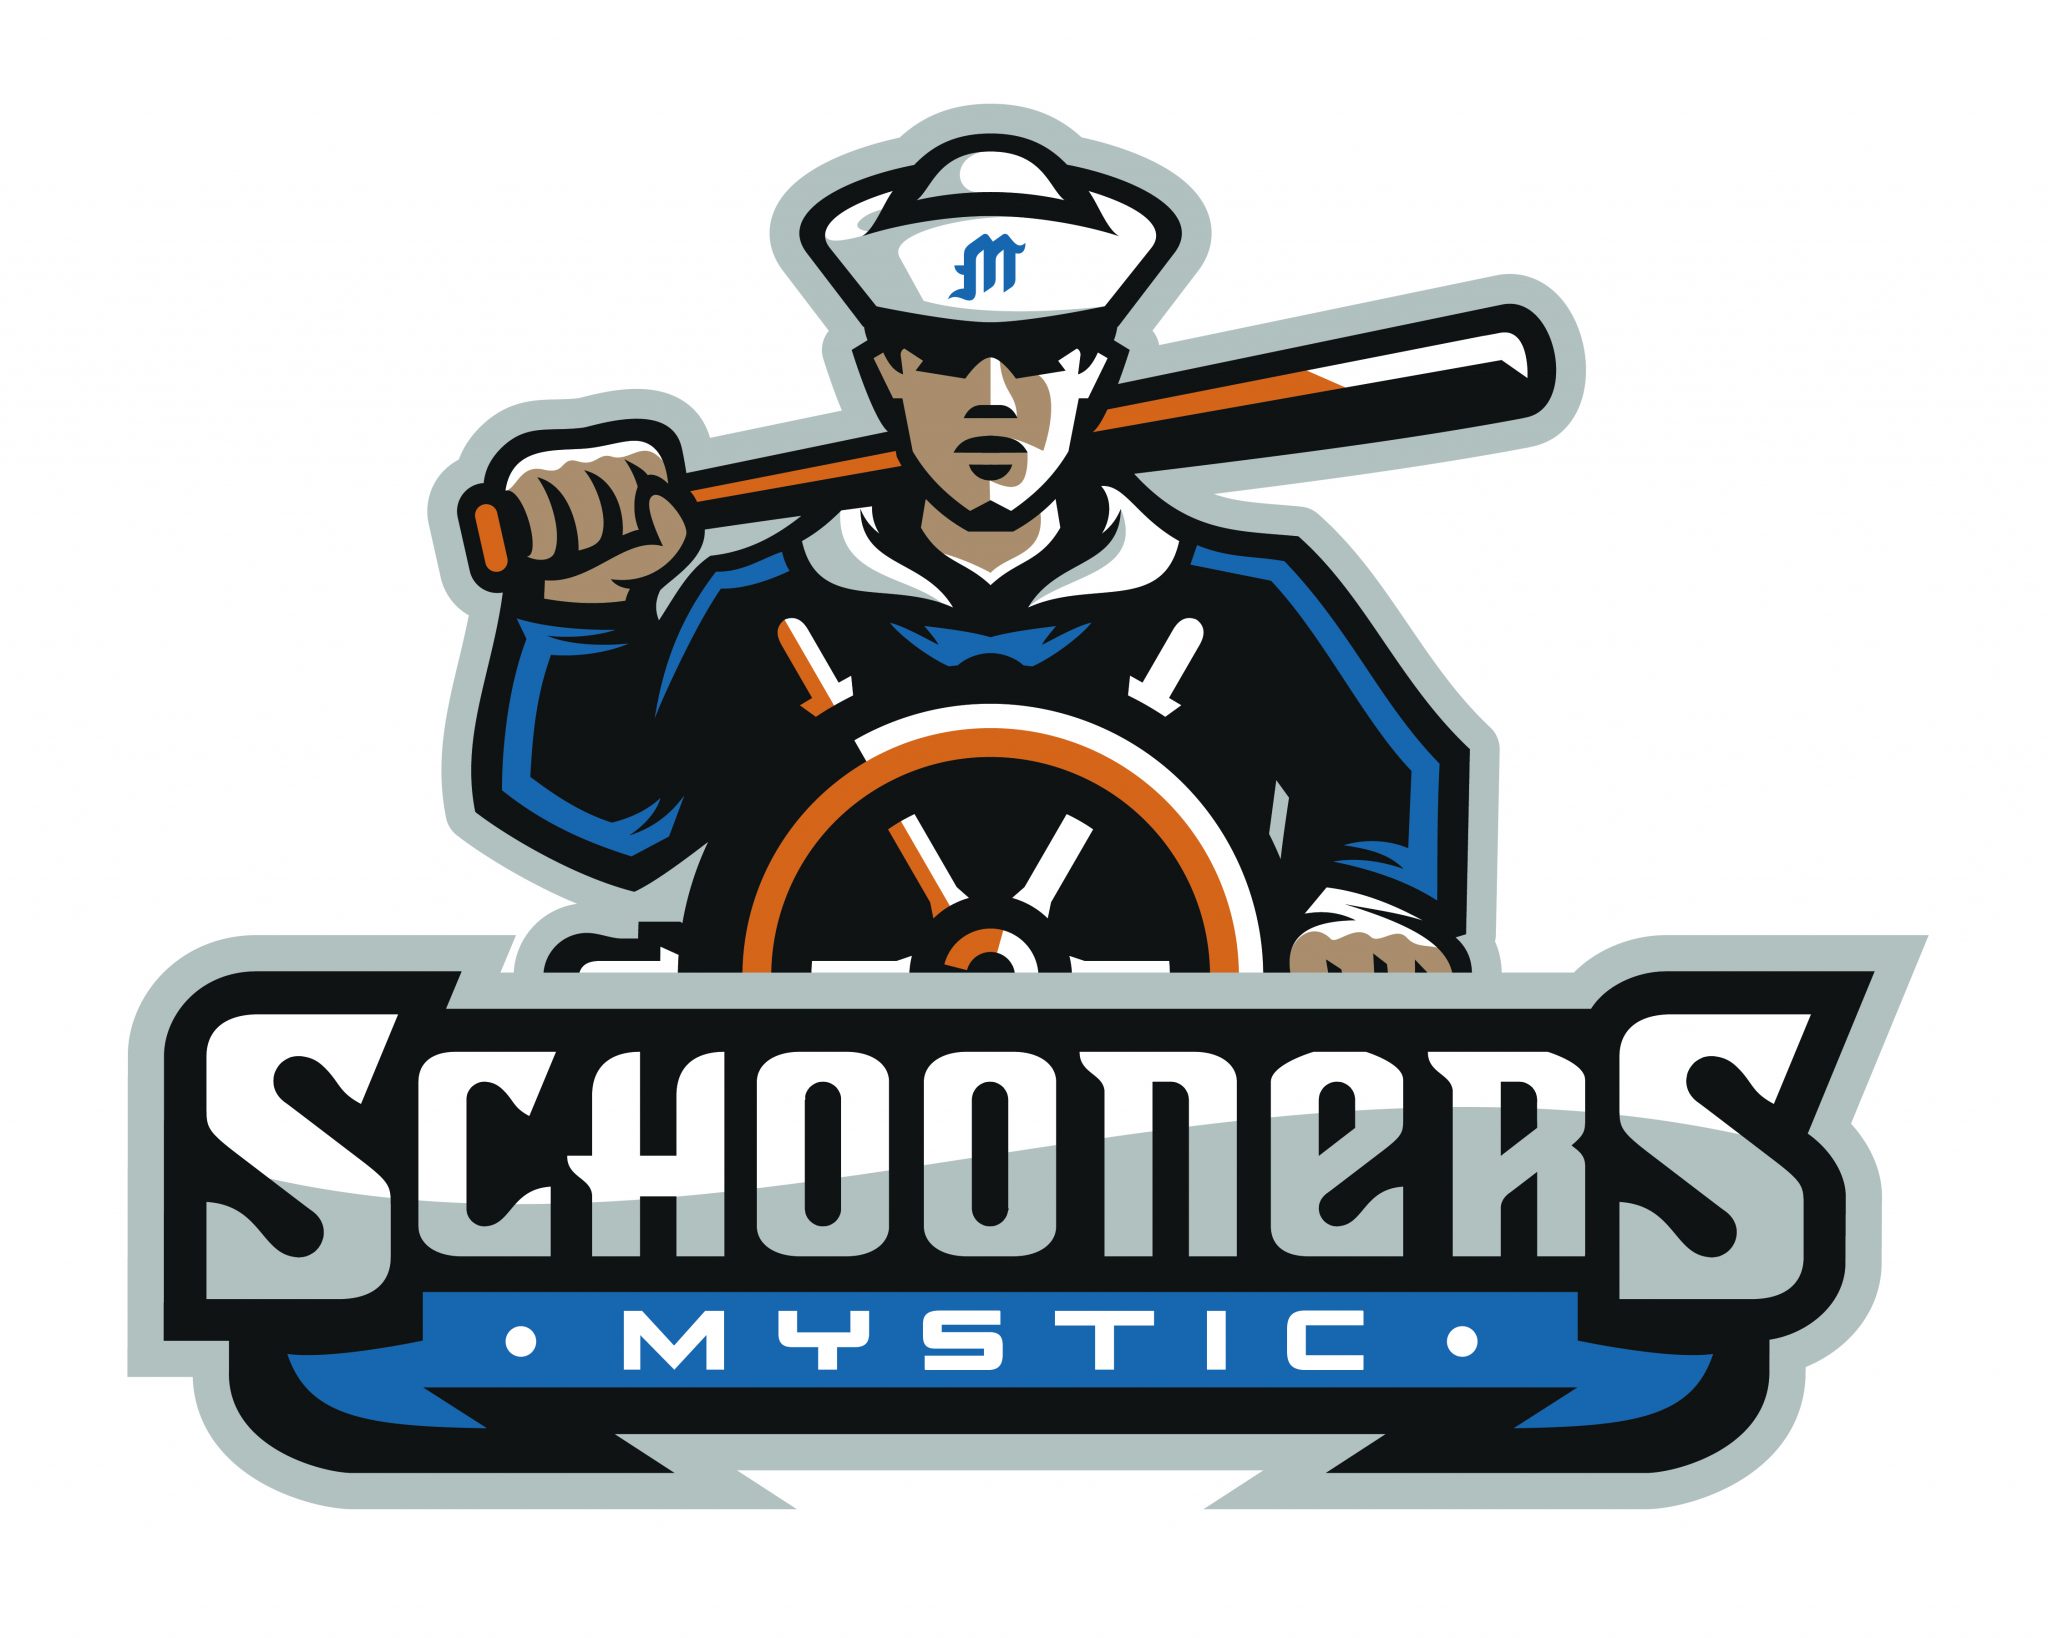 Get to Know Mystic Schooners Baseball and Schooners Beverage Chelsea